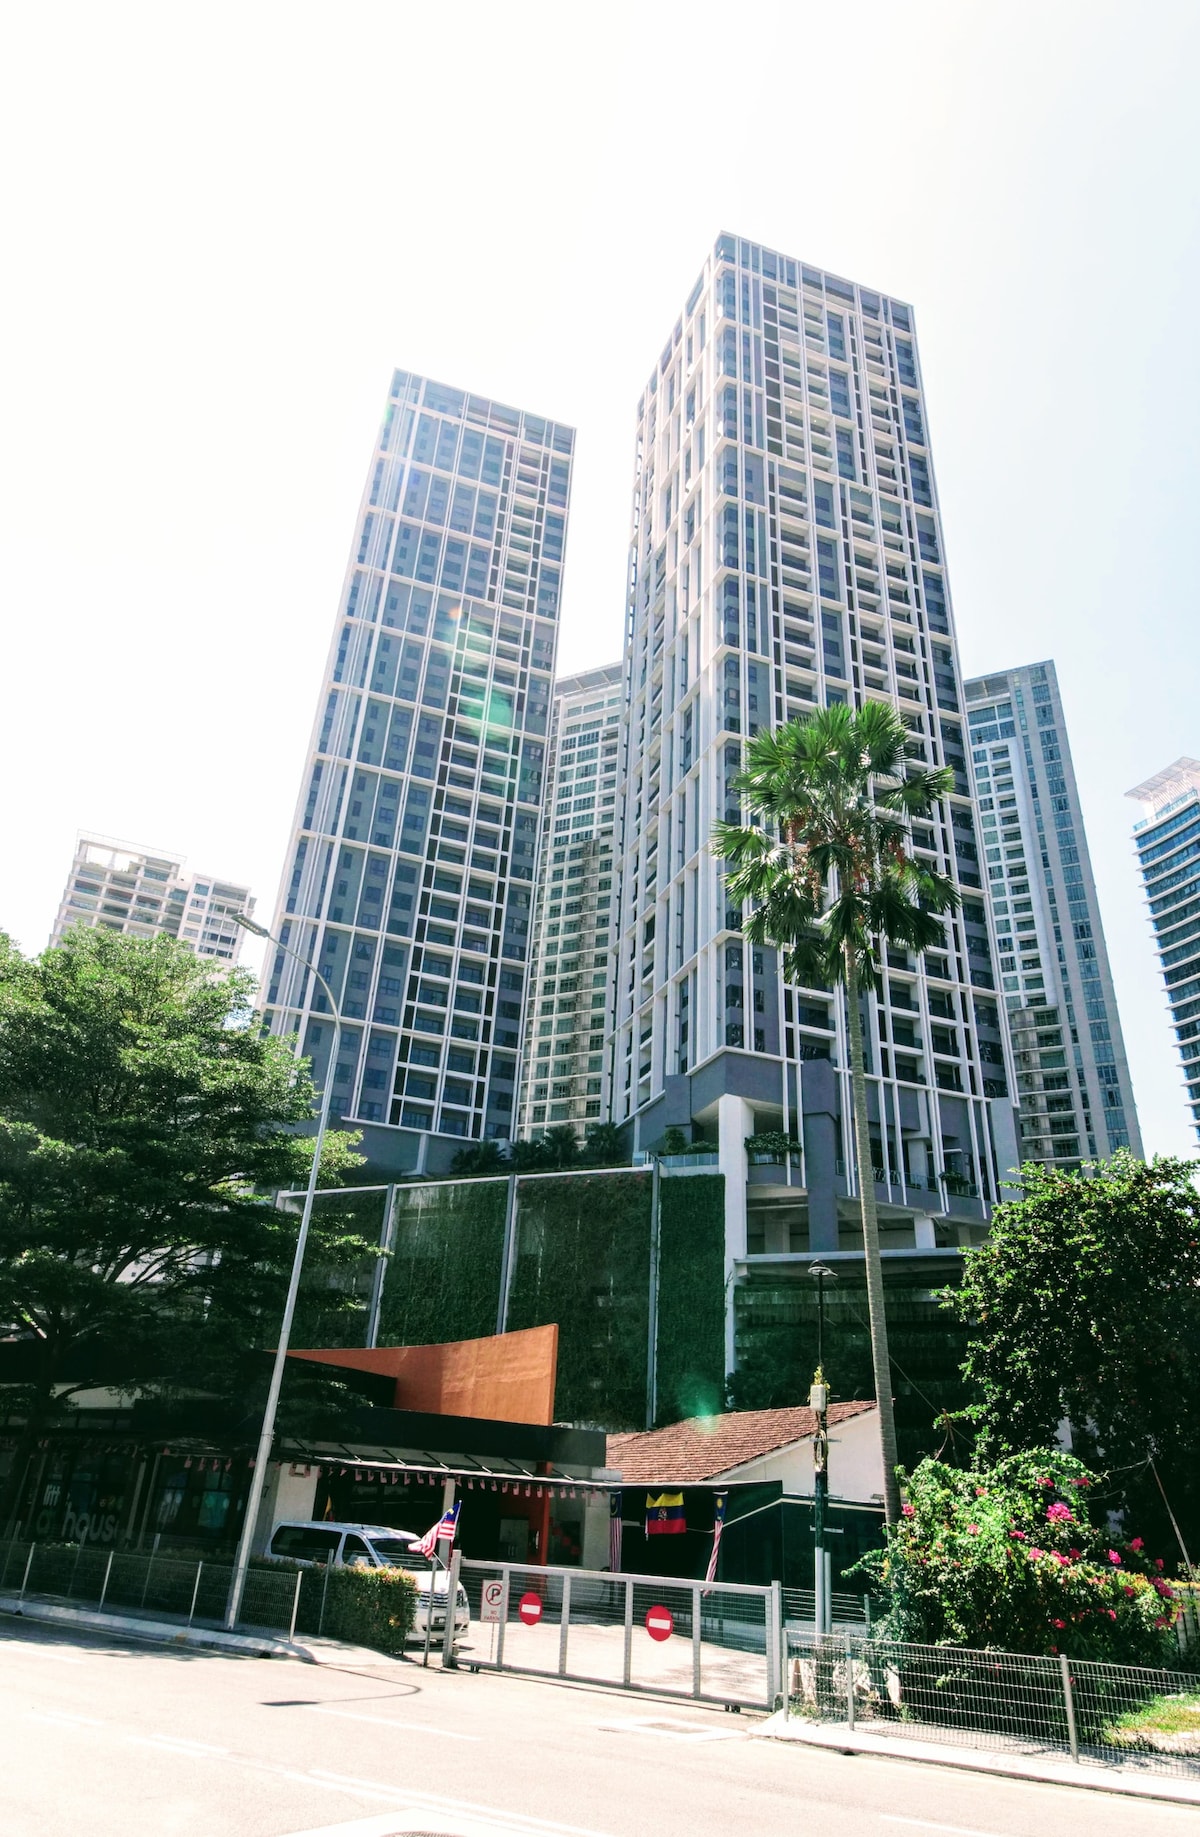 距离全新装潢的吉隆坡城中城公寓800米